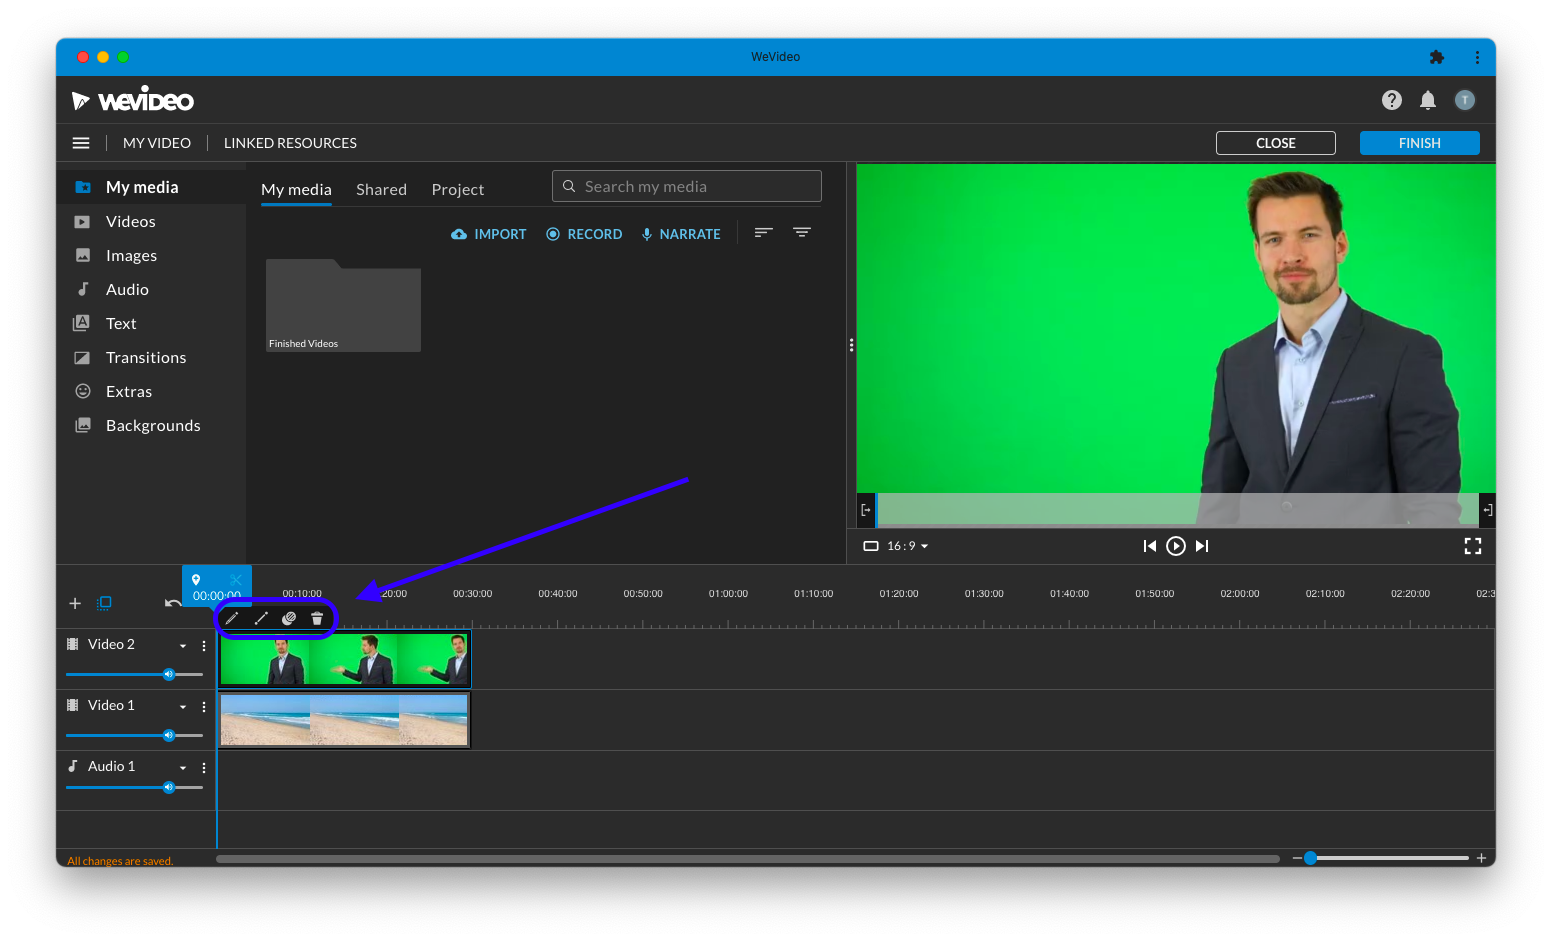 Chroma Key Effect - Nếu bạn đang muốn thực hiện những cảnh quay khó khăn, kỹ thuật chụp màn hình màu (chroma key) có thể giúp bạn làm điều đó một cách dễ dàng. Hãy xem hình ảnh liên quan để tìm hiểu cách áp dụng hiệu quả kỹ thuật này trong quá trình sản xuất video của bạn.